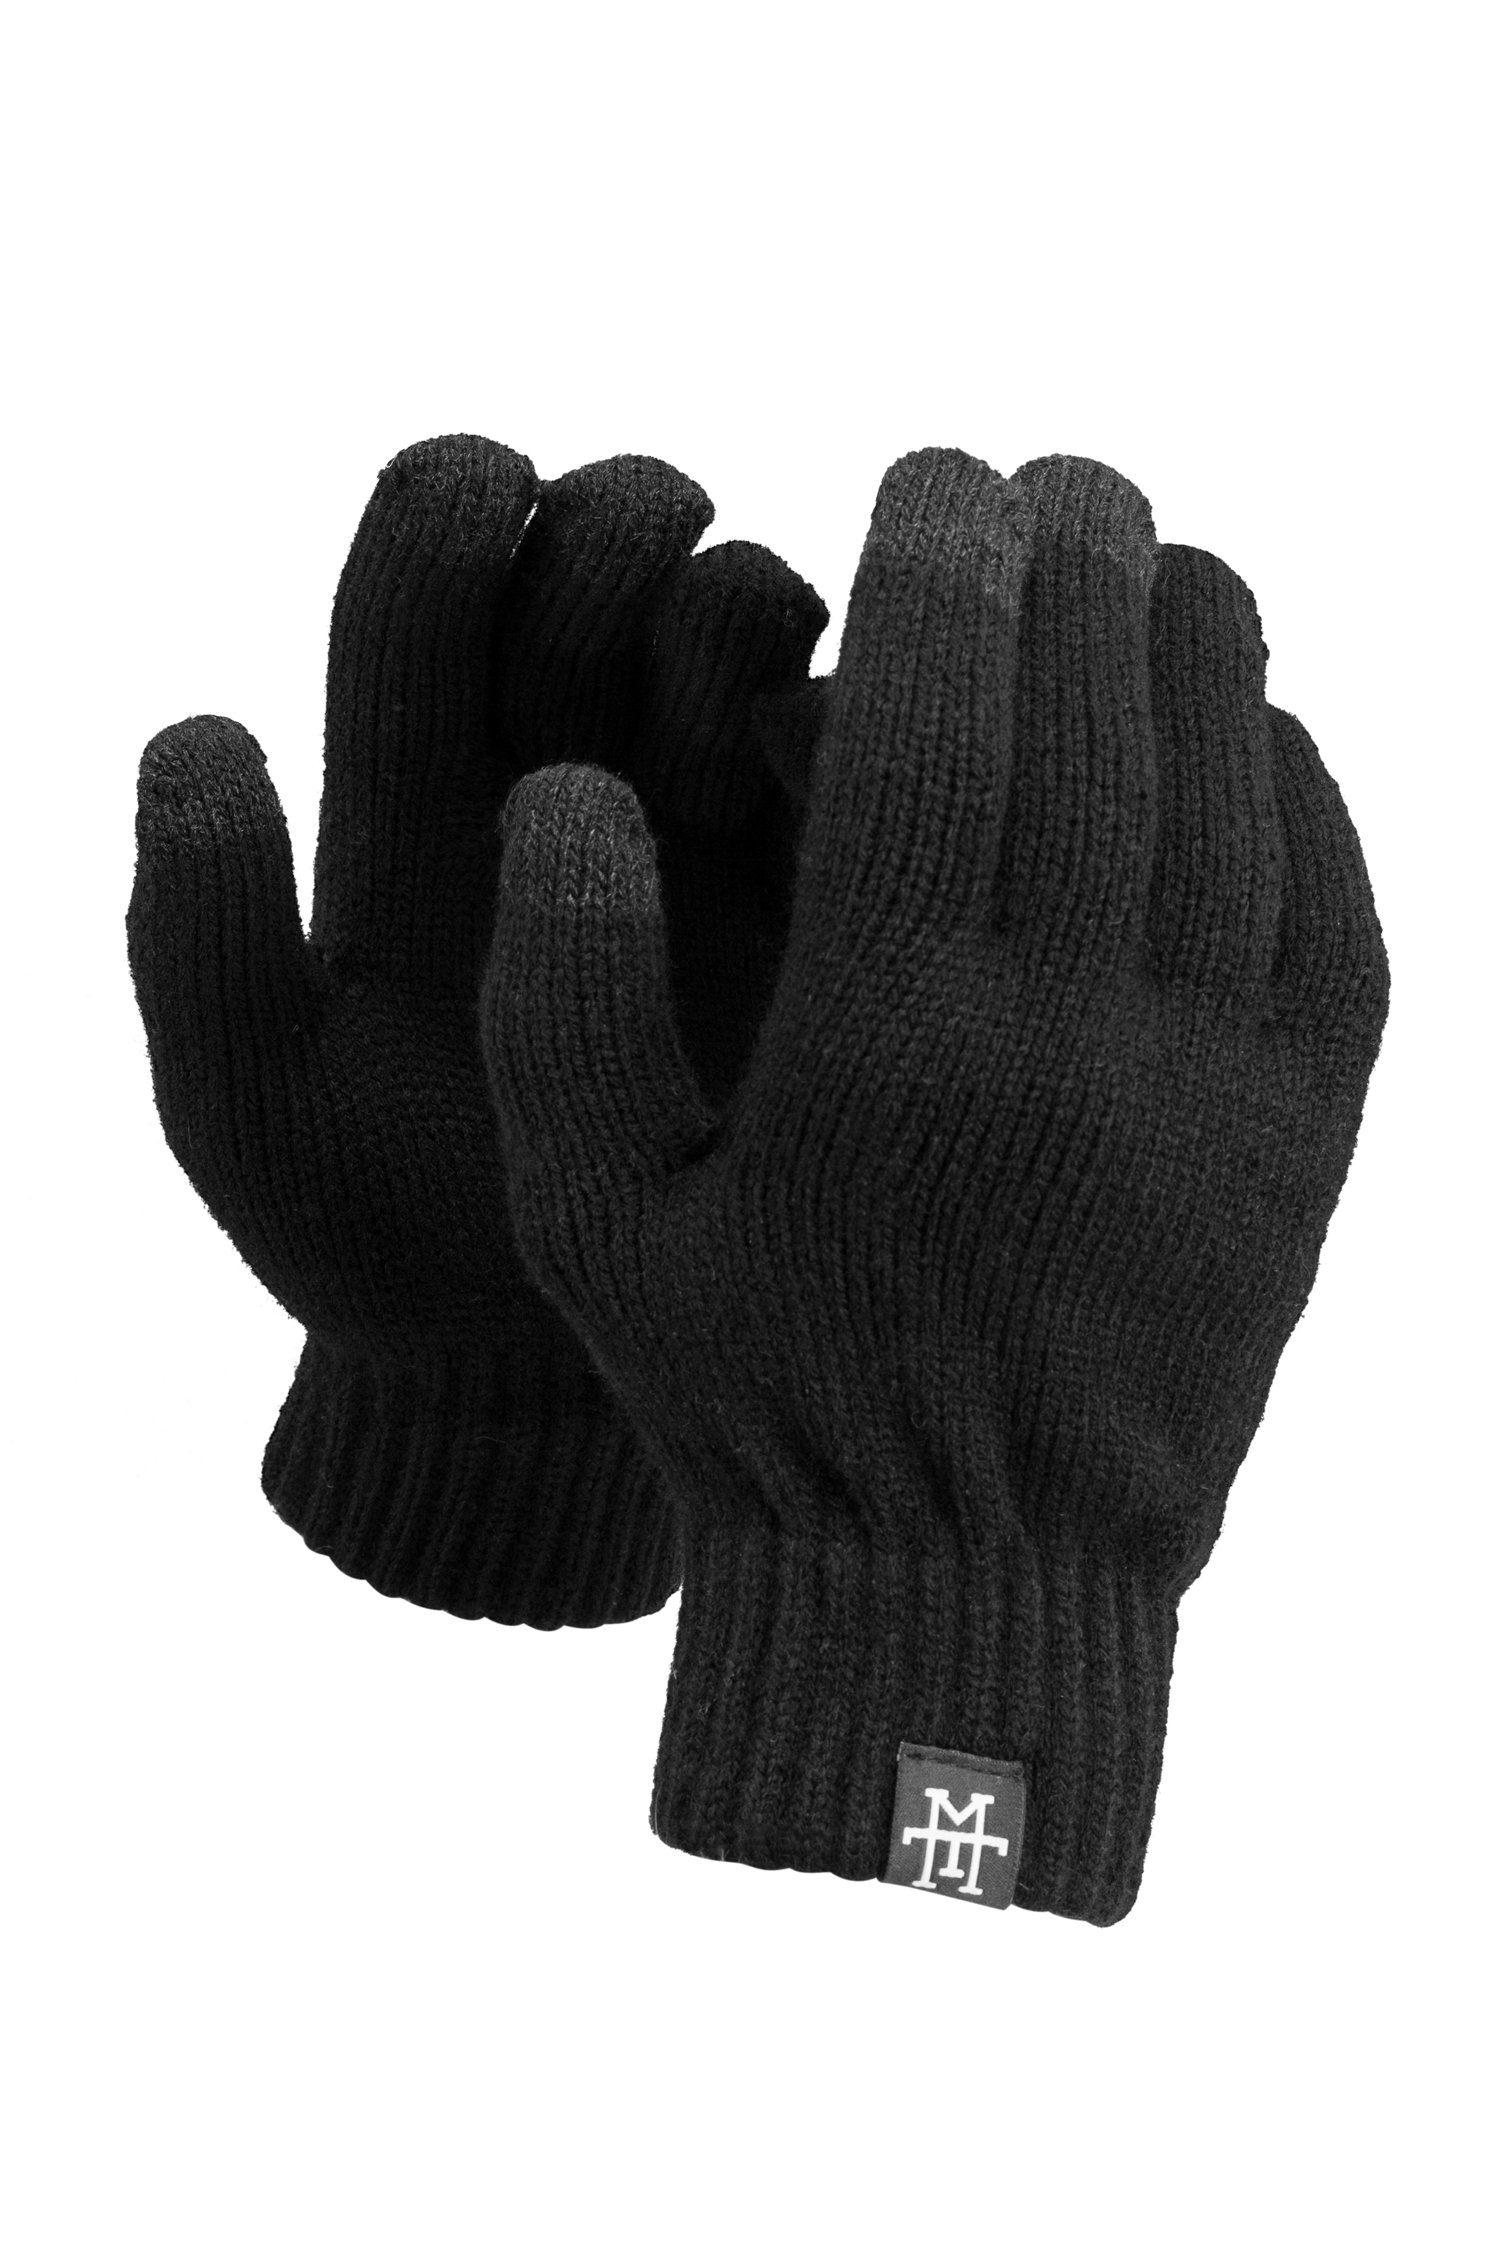 Manufaktur13 Smart Baumwollhandschuhe - Gloves mit Asphalt Smartphone Handschuhe Thinsulate Futter